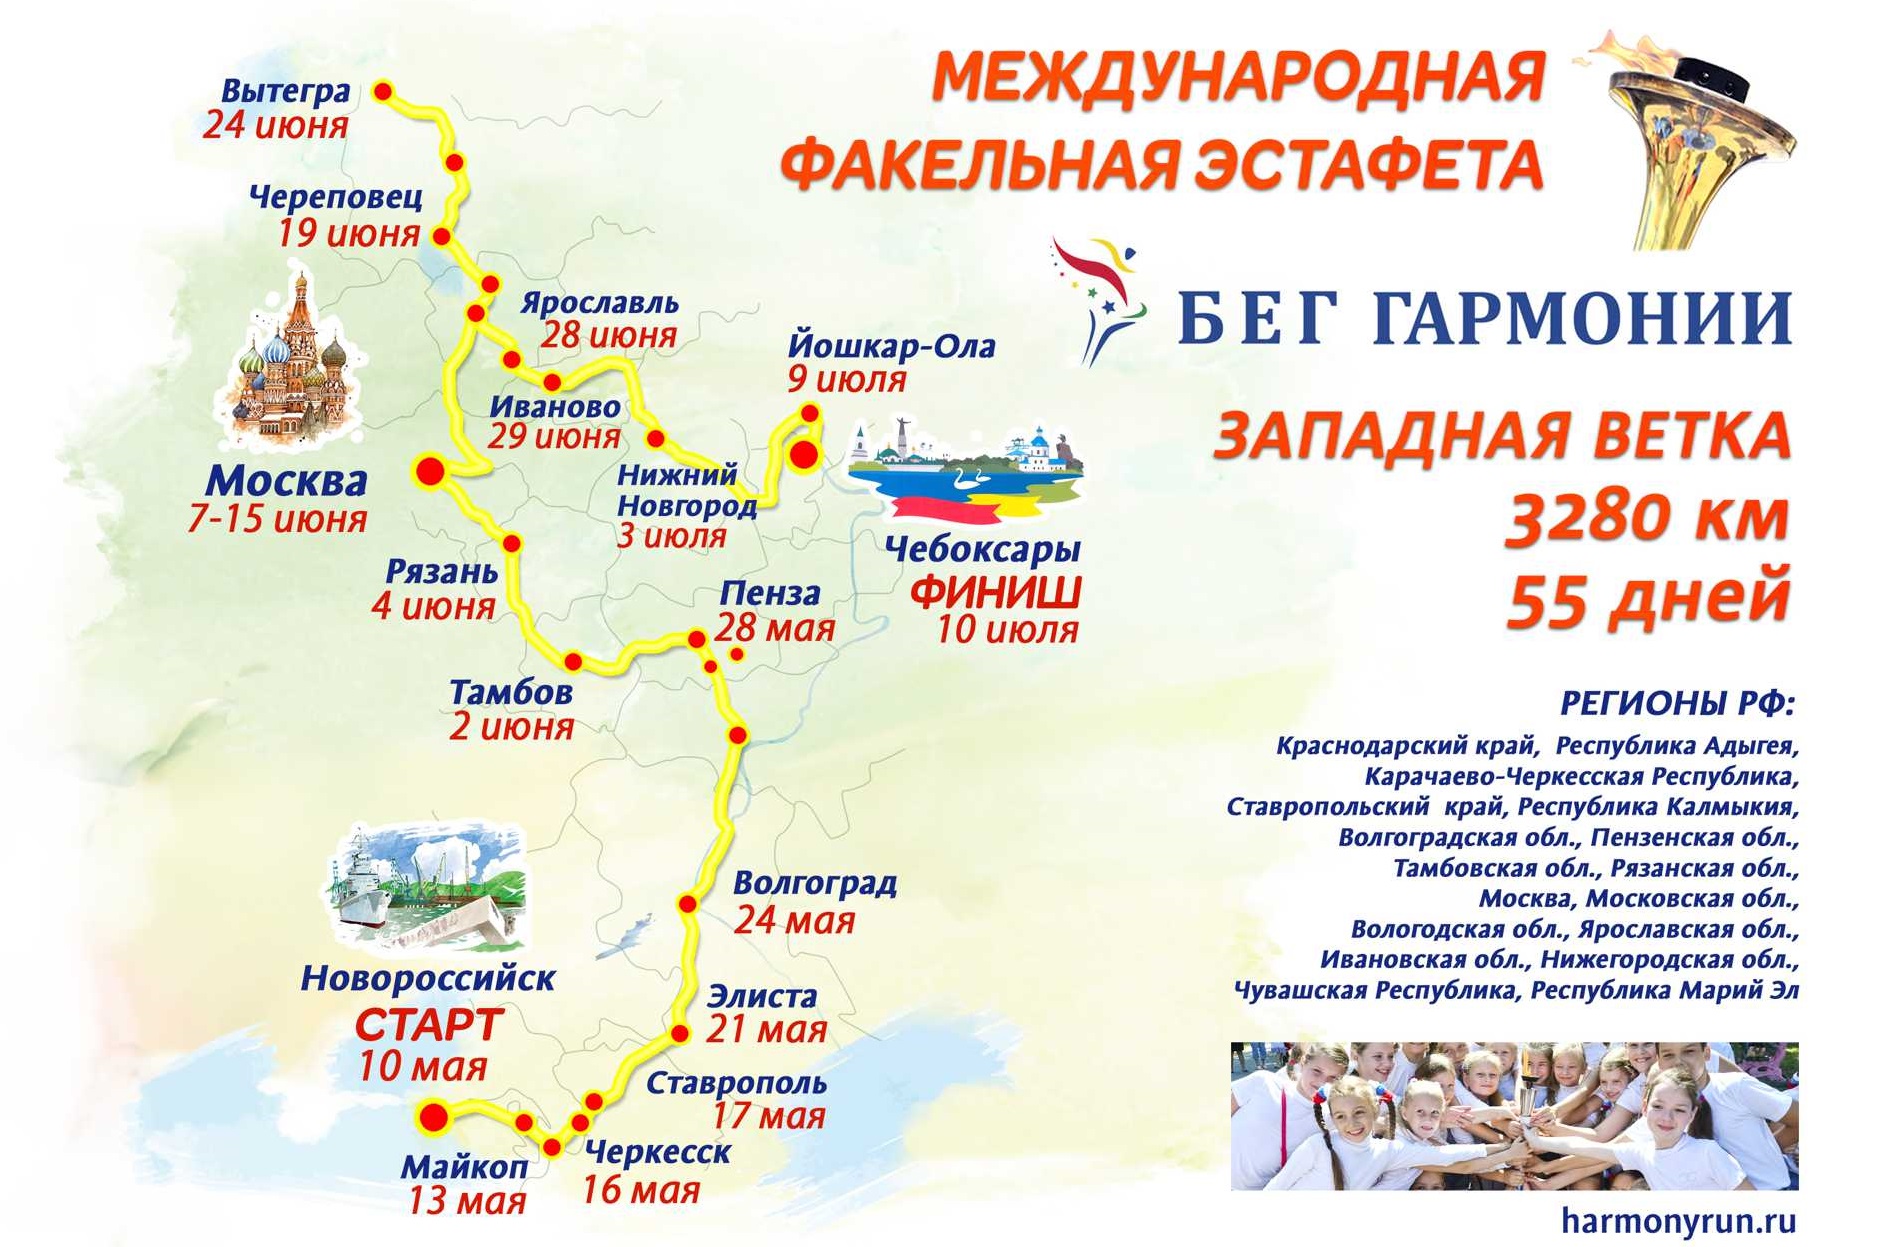 Факельная эстафета "Бег гармонии" прибудет в Ивановскую область